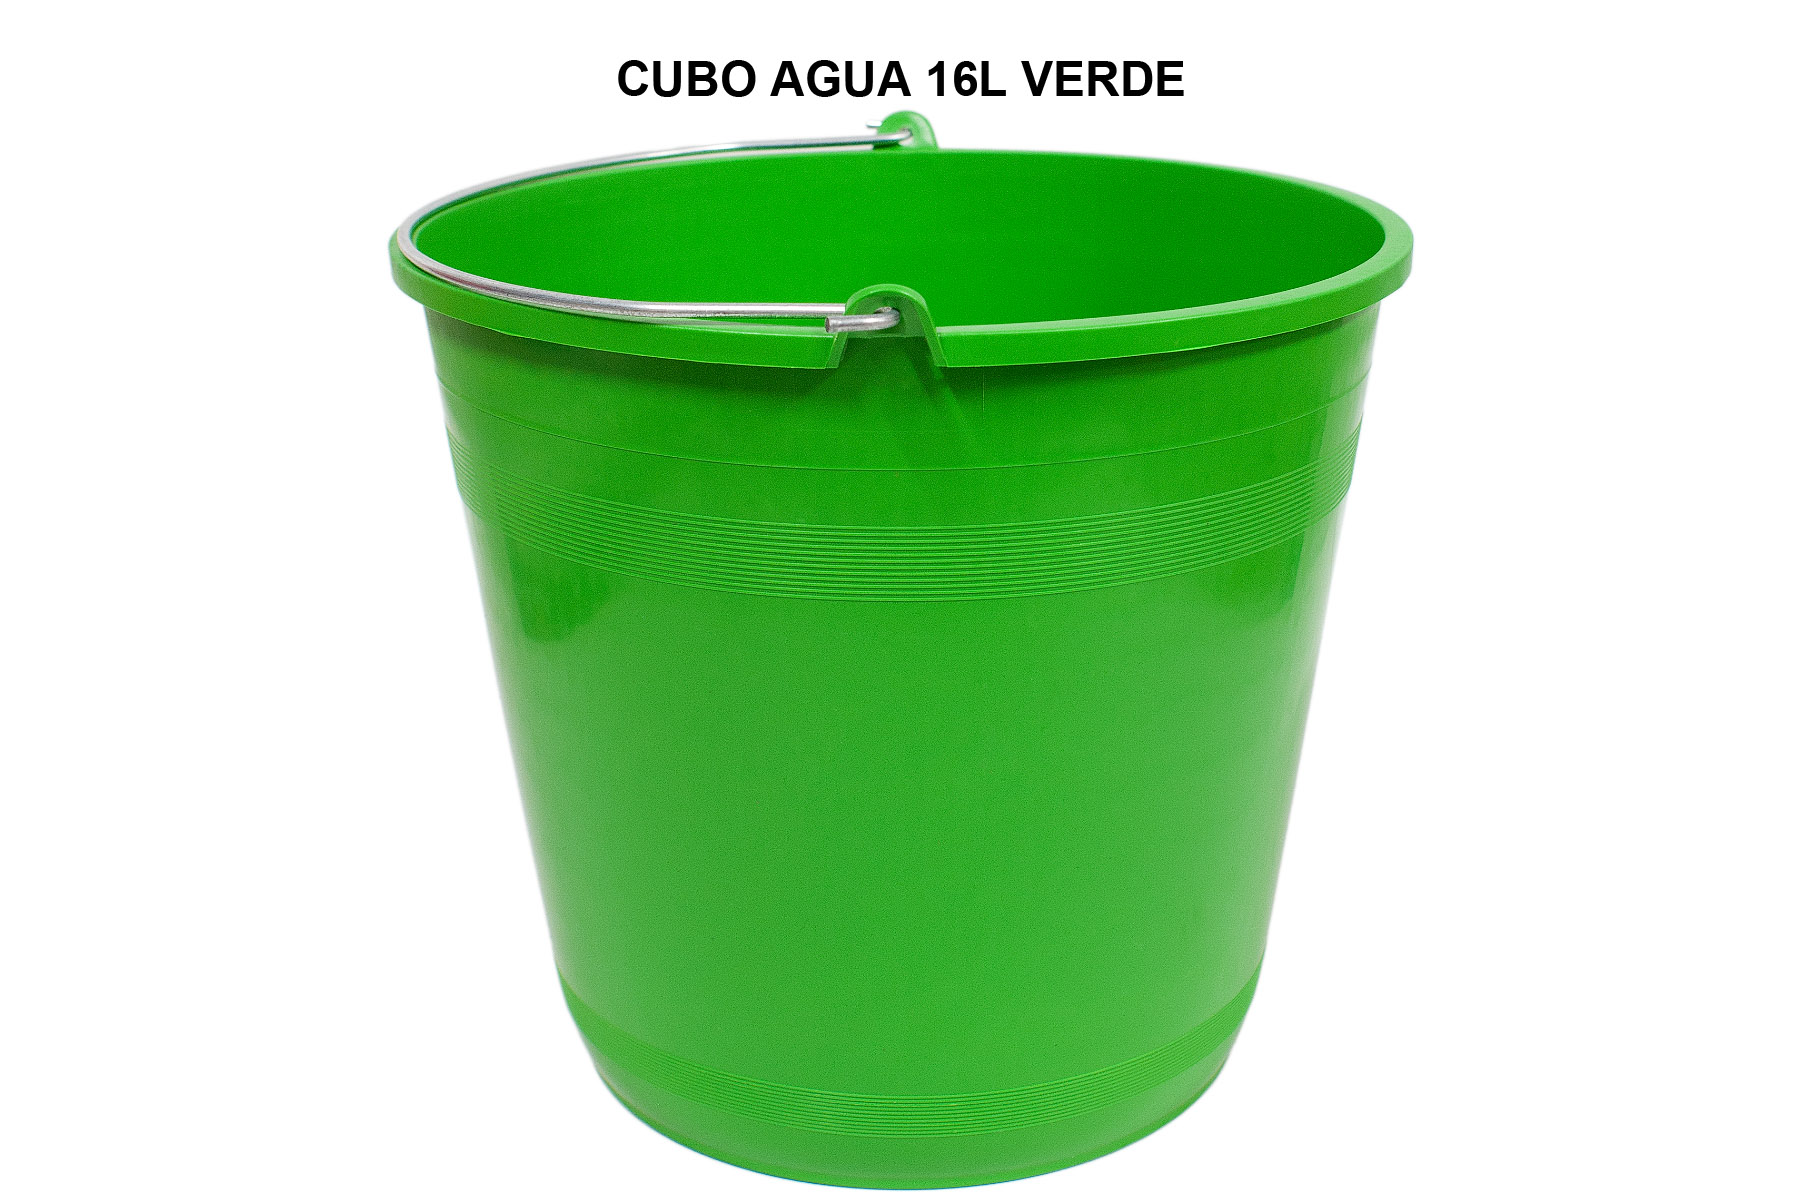 CUBO 16L VERDE – Productos para la limpieza del hogar